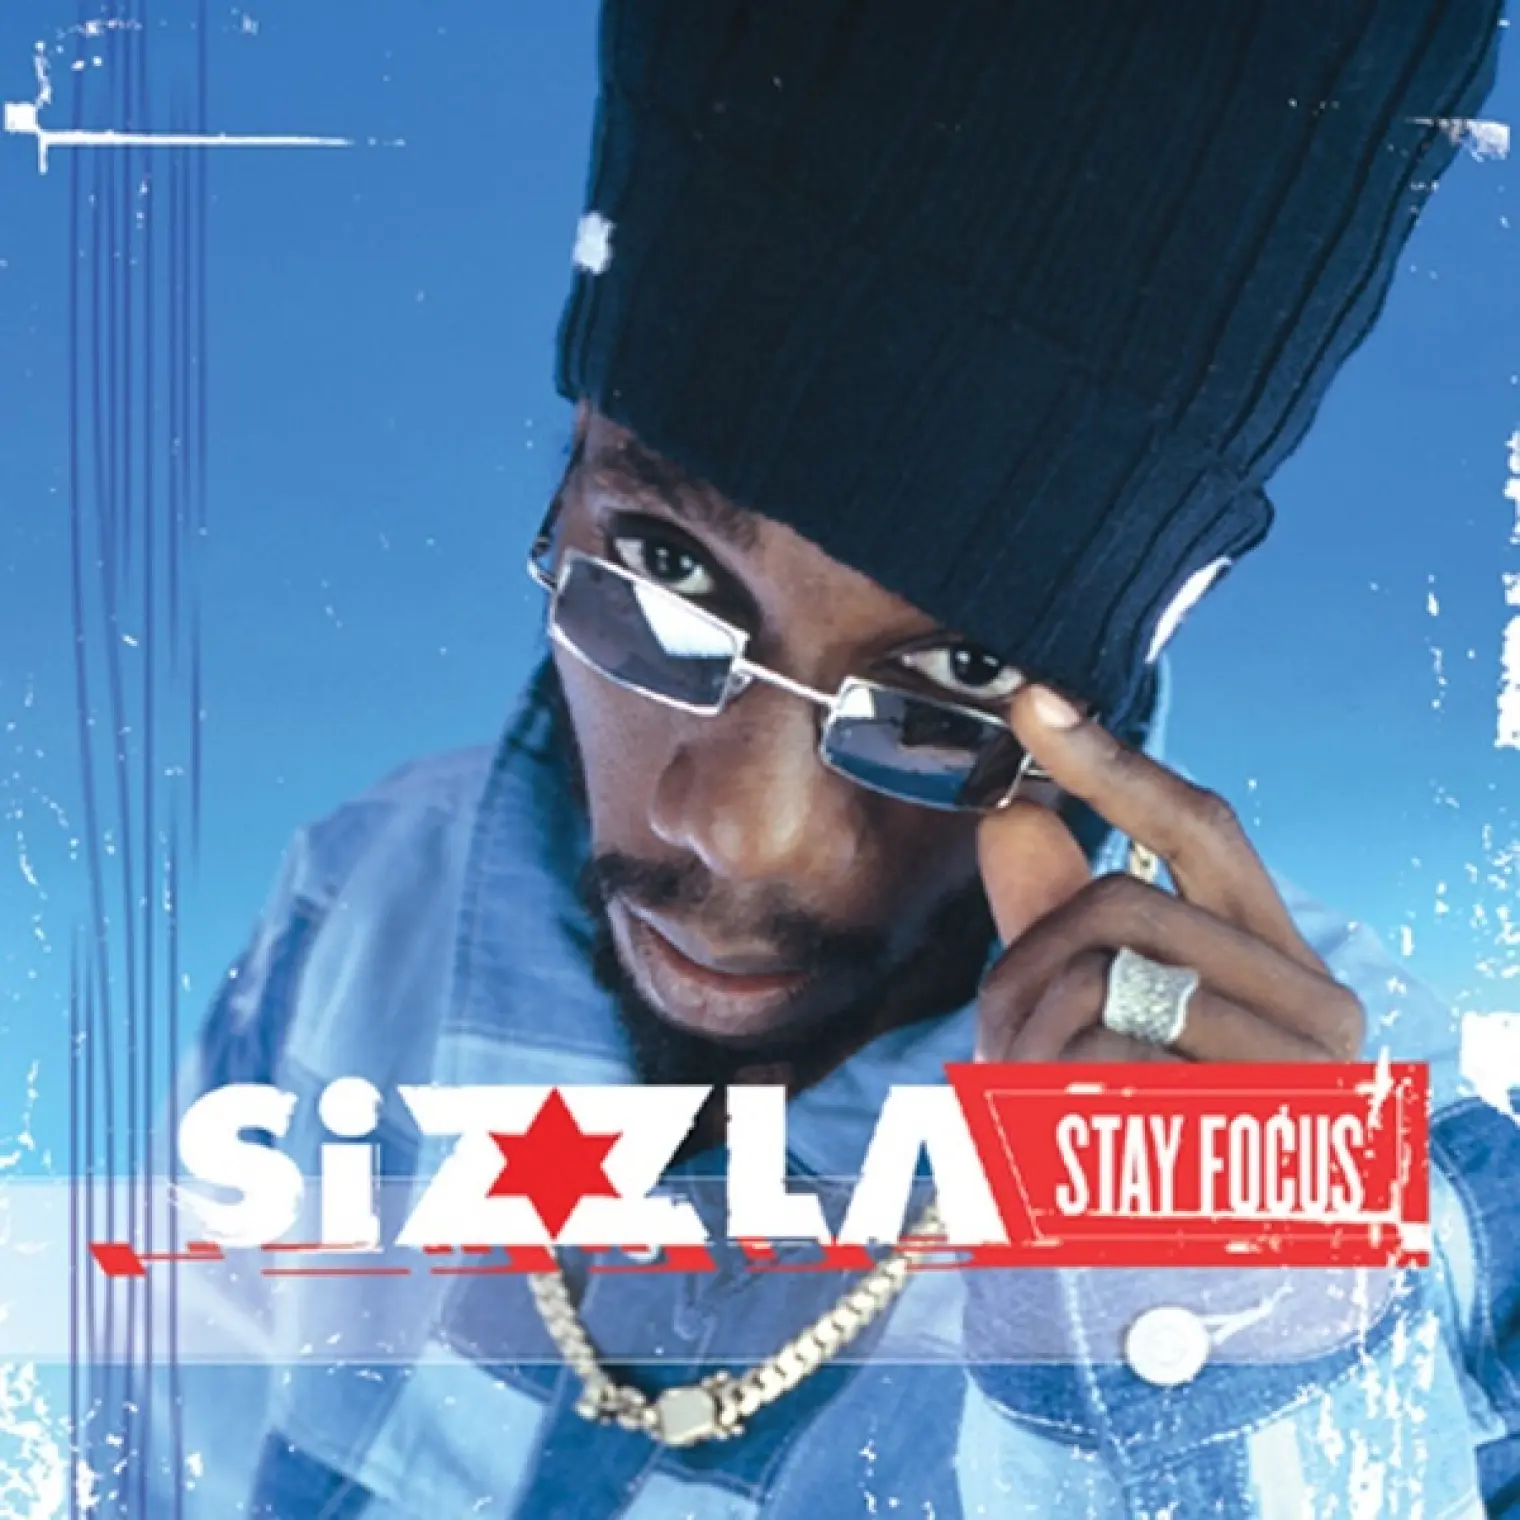 Stay Focus -  Sizzla 